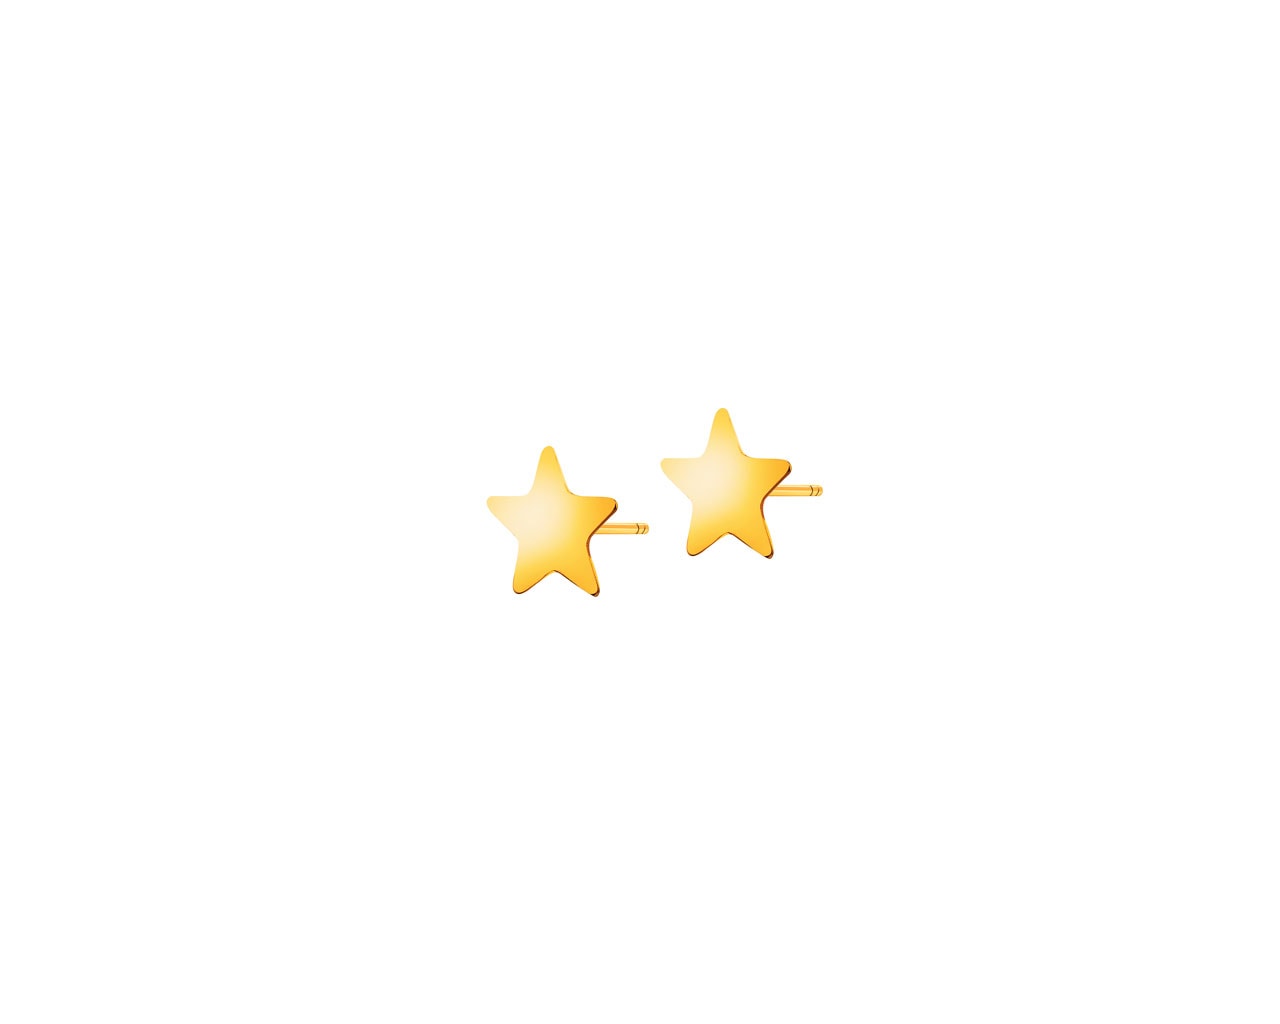 Zlaté náušnice - hvězdy